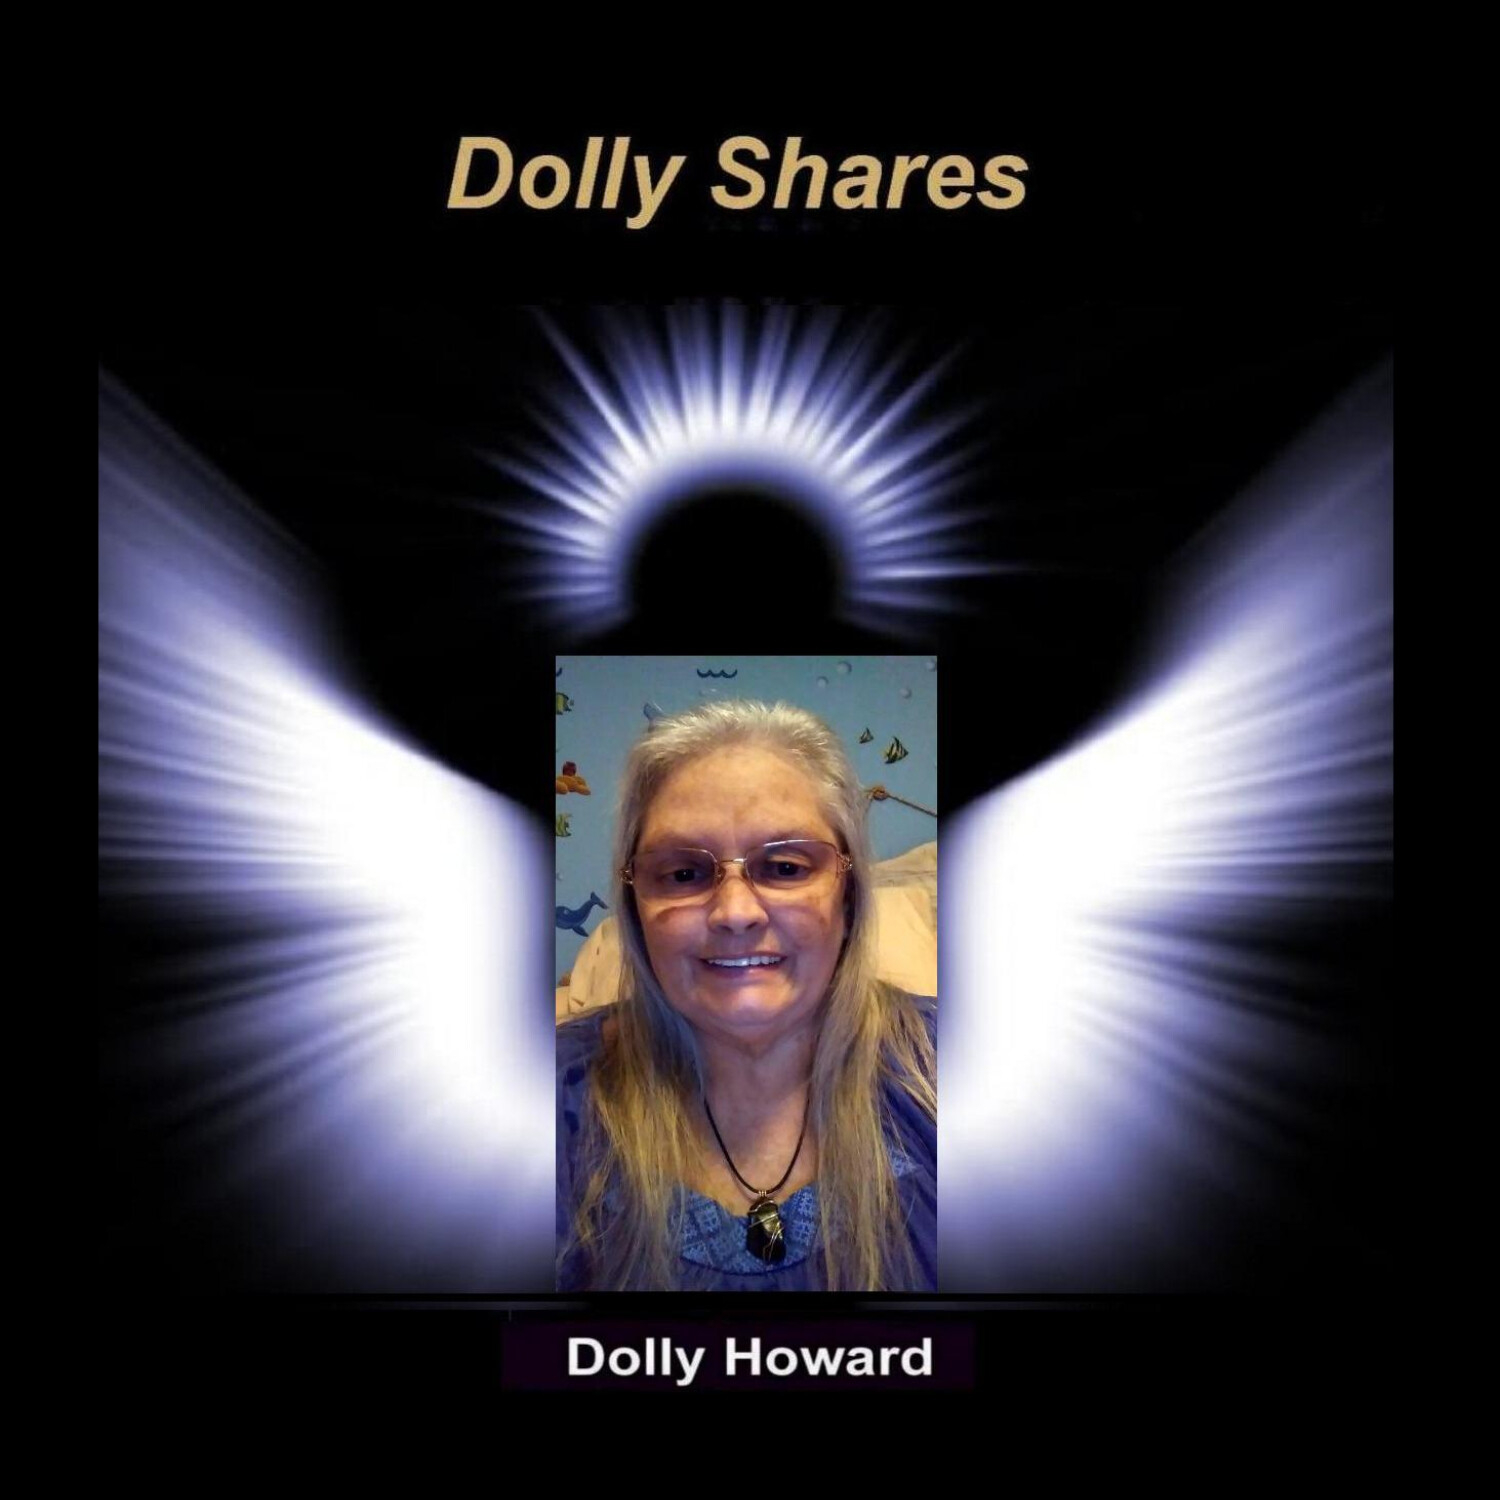 DOLLY SHARES with Dolly Howard 2/16/16 - News & Casadaga